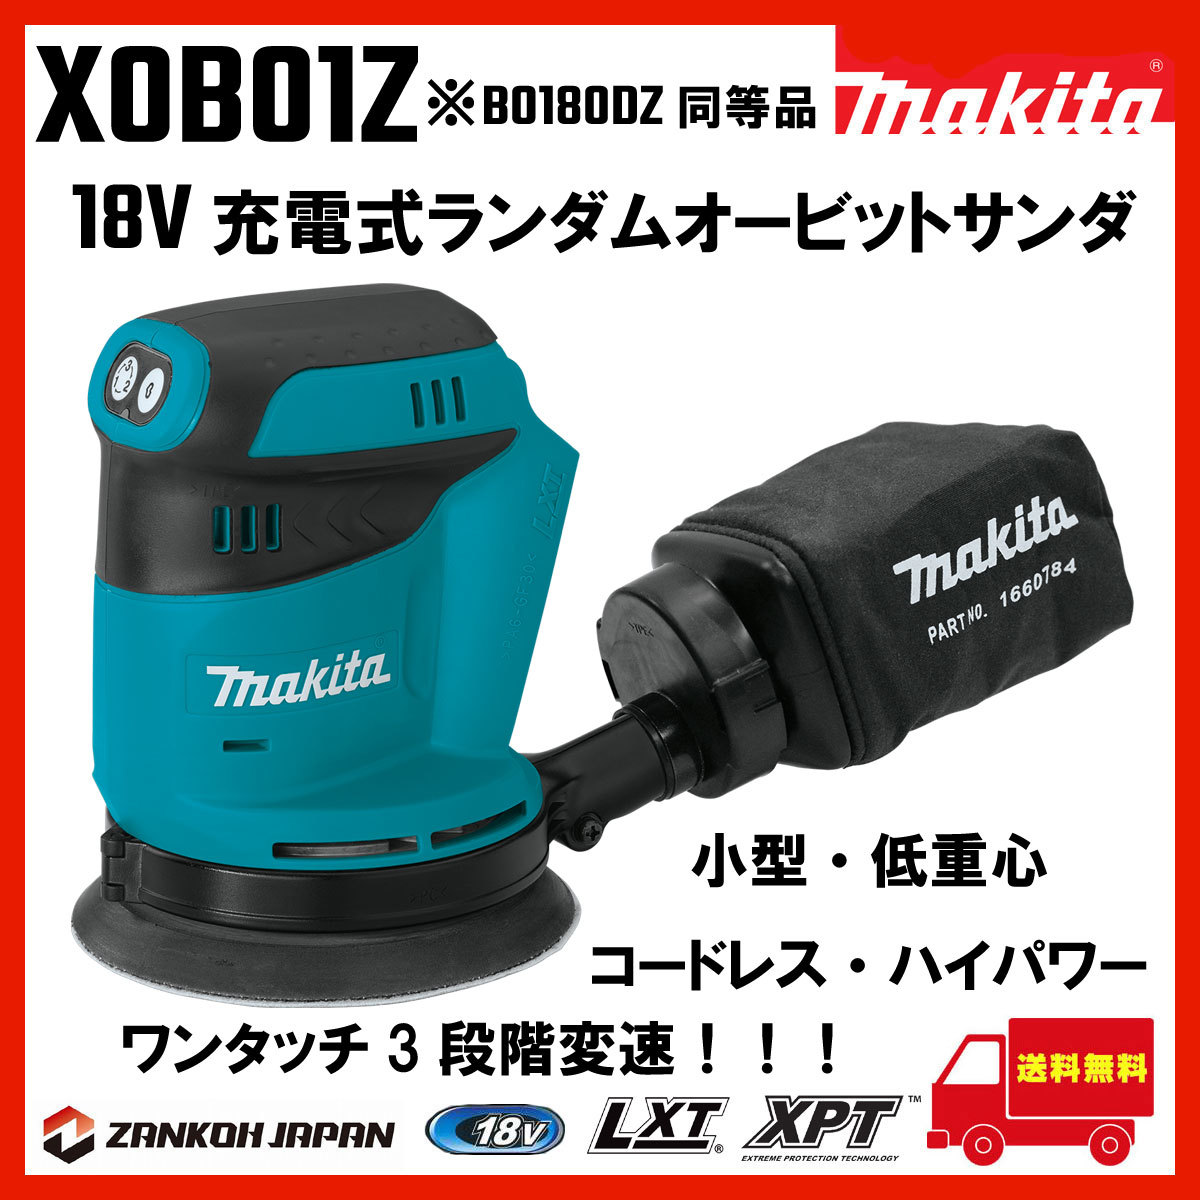 マキタ ランダムオービット サンダ 充電式 18V MAKITA 18V ペーパー寸法 125mm BO180DZ 同等品 XOB01Z c